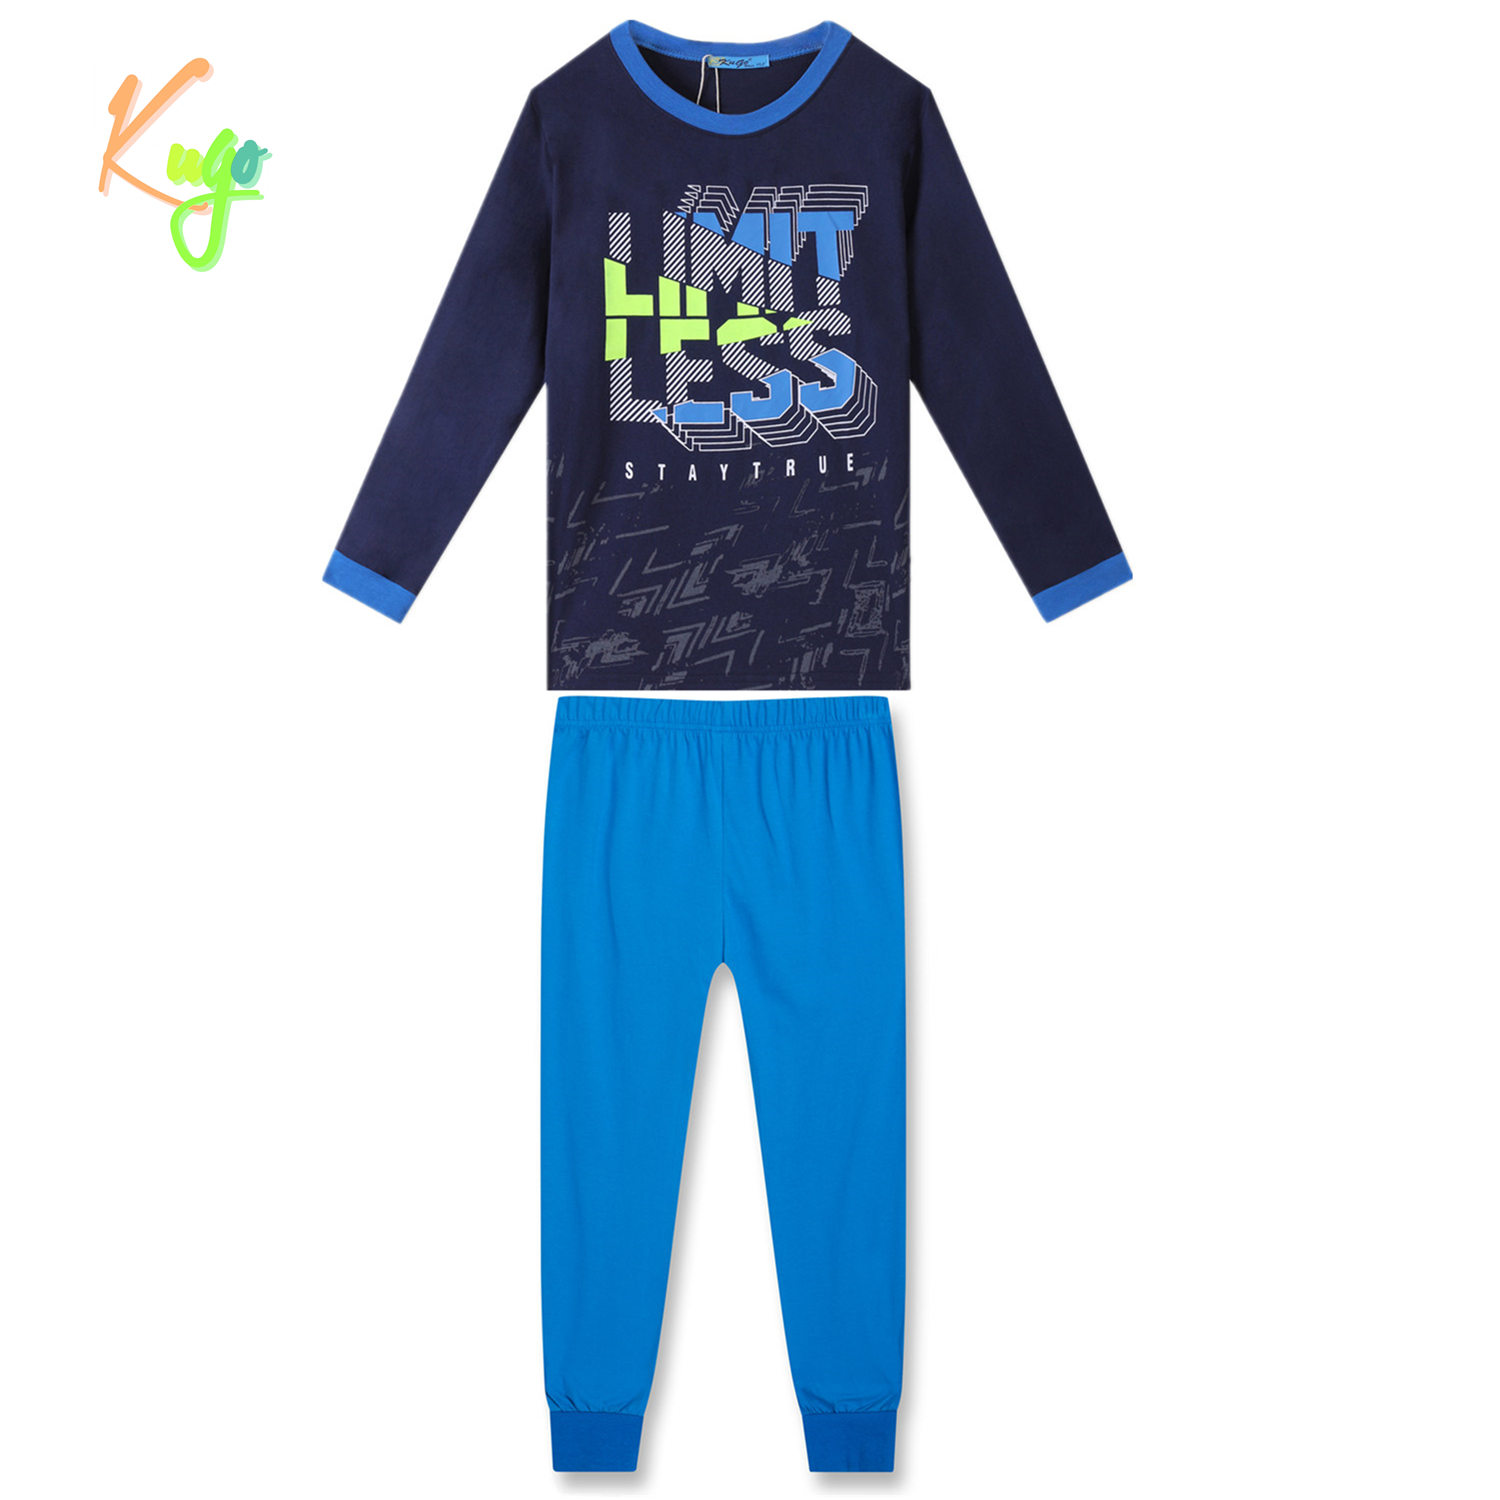 Chlapecké pyžamo - KUGO MP3783, tmavě modrá Barva: Modrá tmavě, Velikost: 146